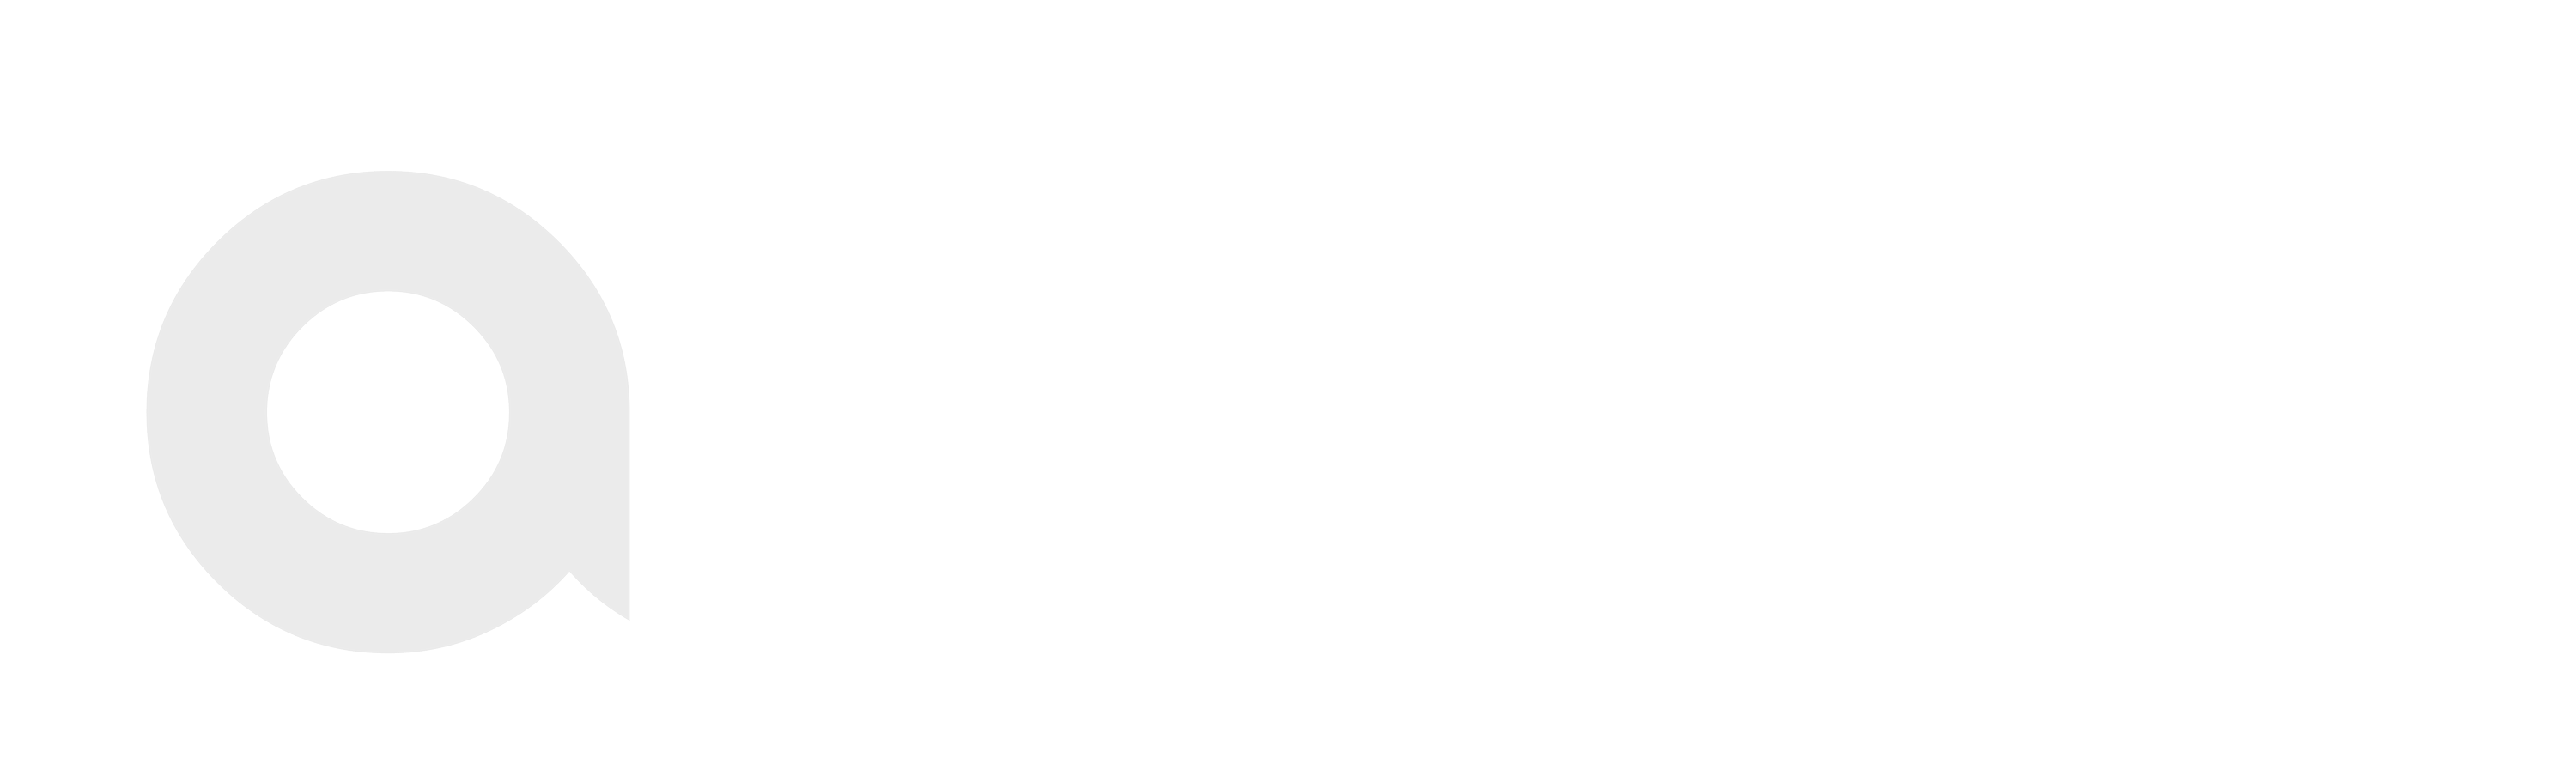 Axion Logo White